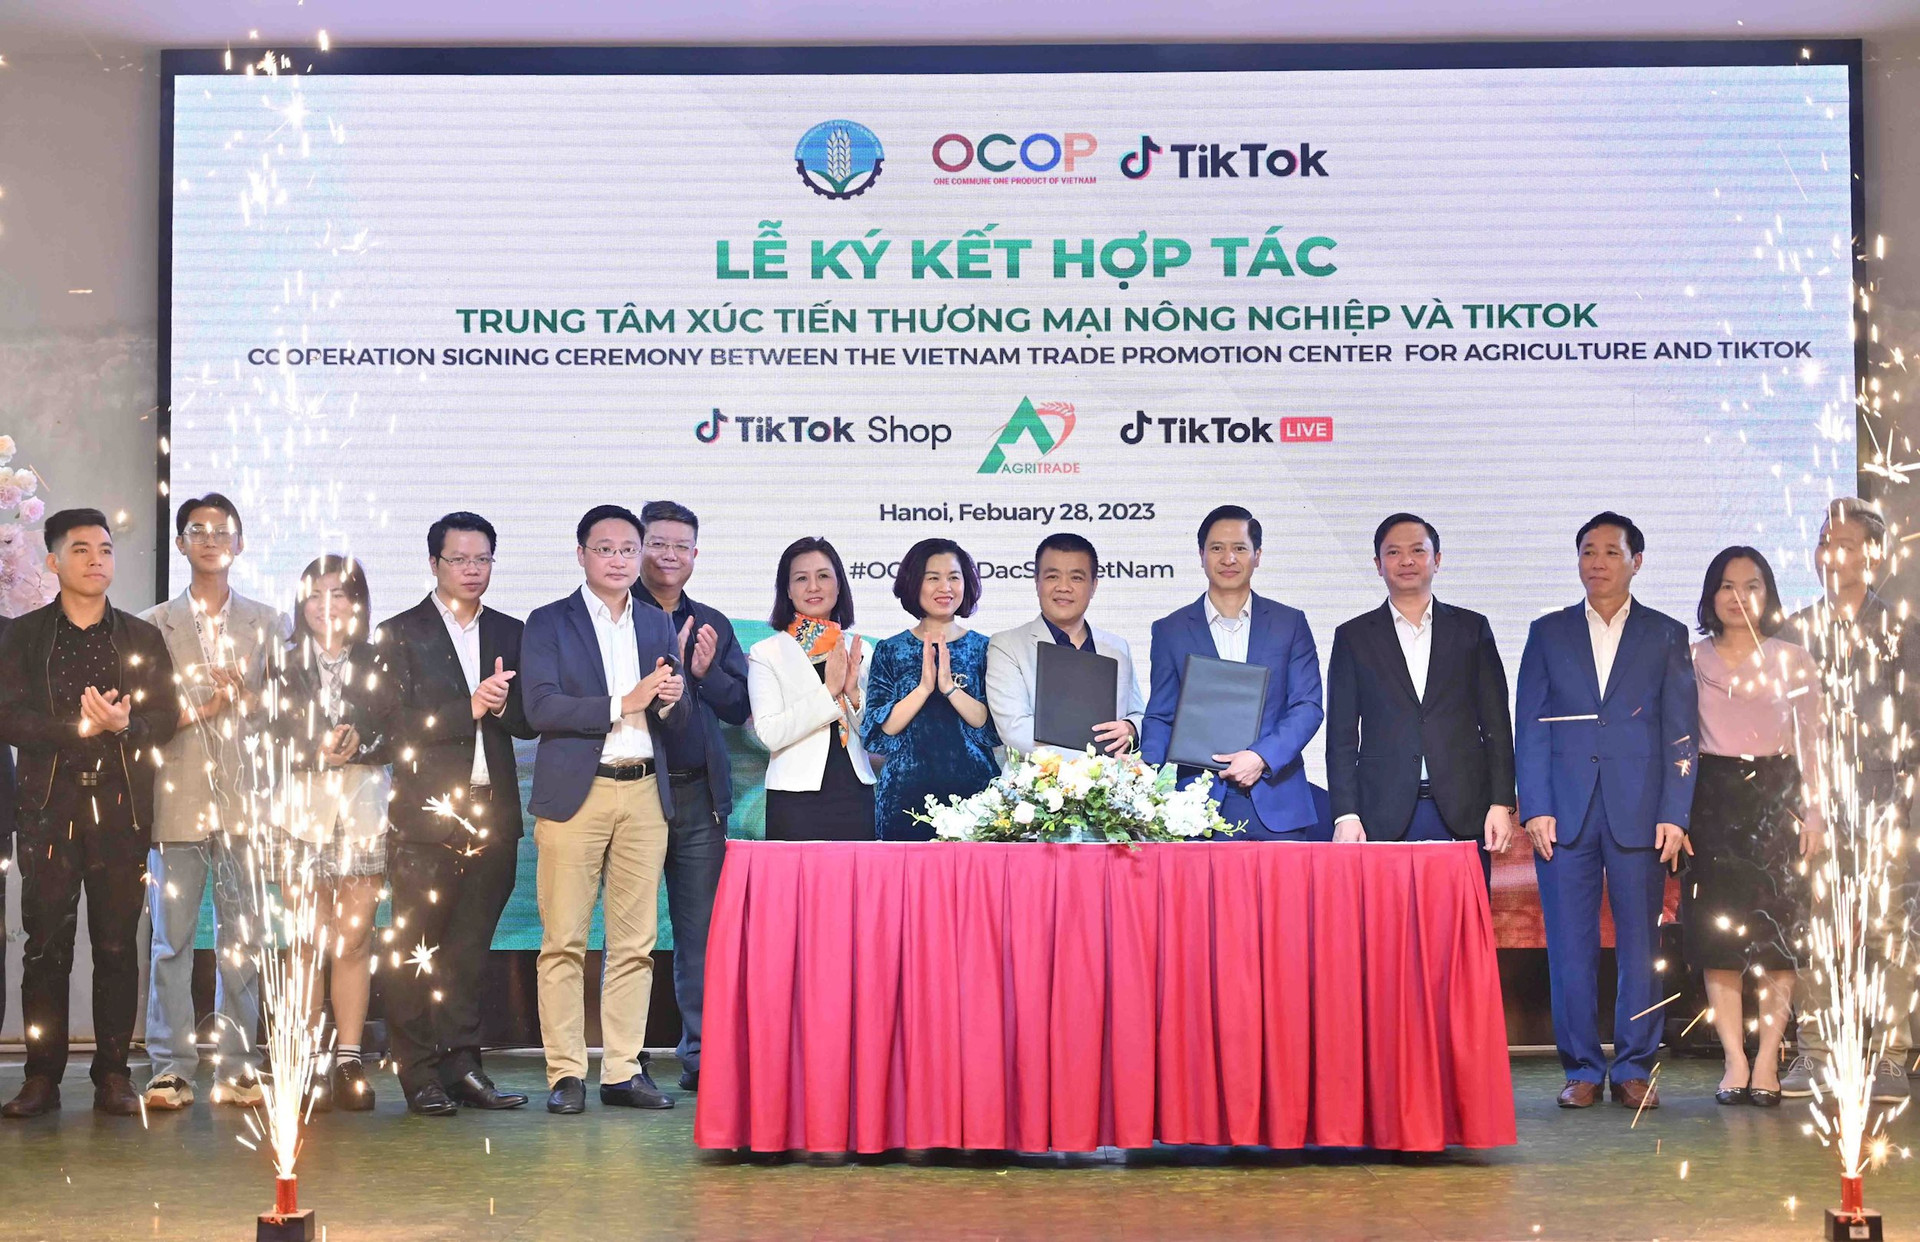 Bán đặc sản trên TikTok giúp Thịt chua Trường Food, trà Hoàng Su Phì, mè xửng Mộc Truly Hue's,... thu hút hơn 350 triệu lượt xem - Ảnh 7.